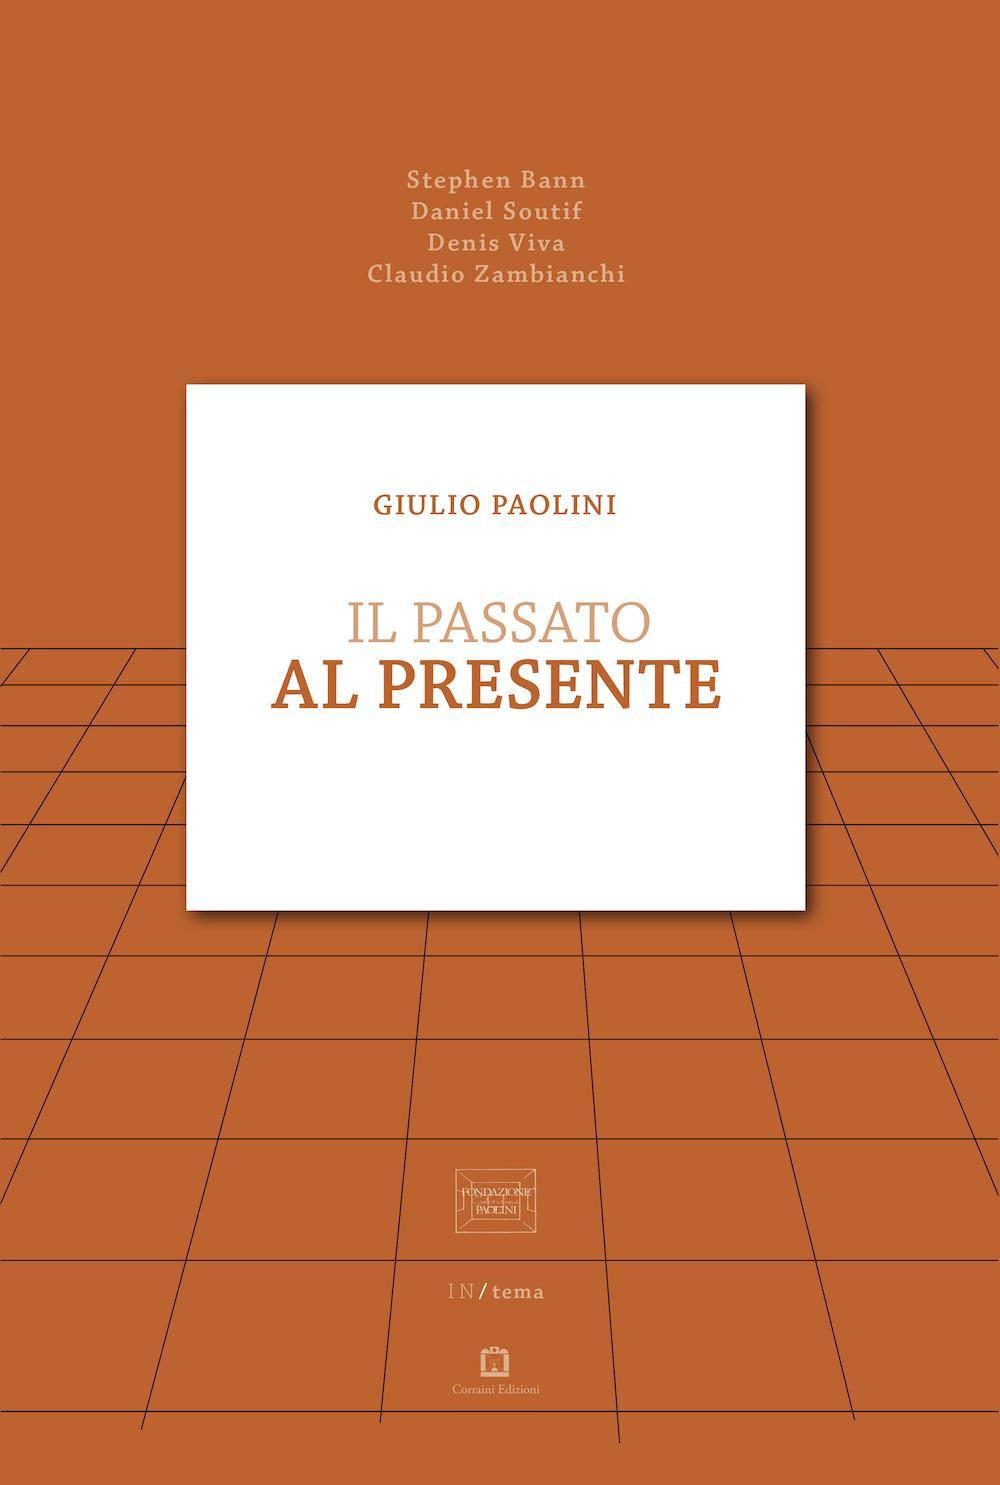 Giulio Paolini. Il passato al presente